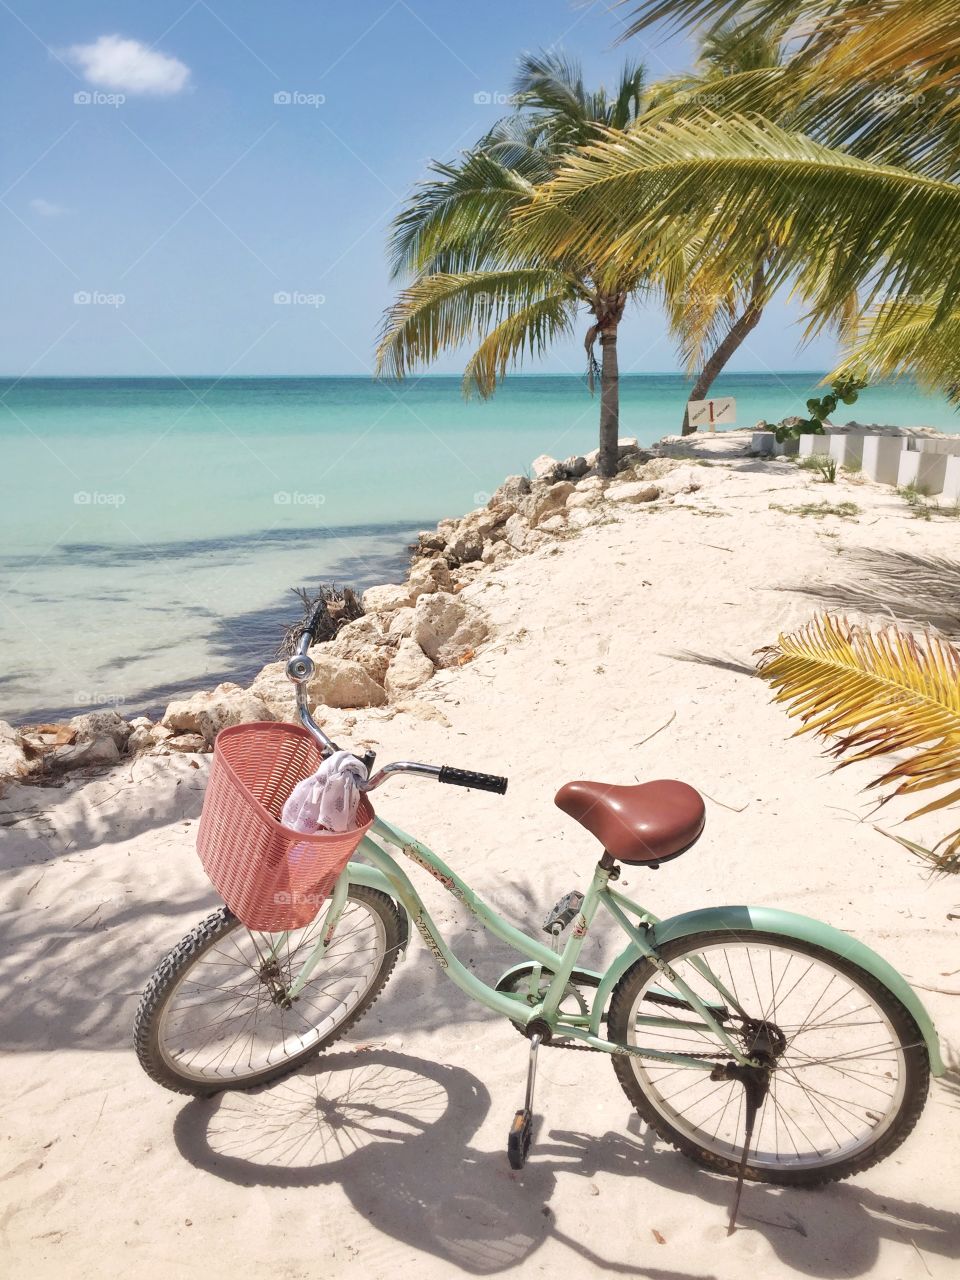 A bike ride through paradise